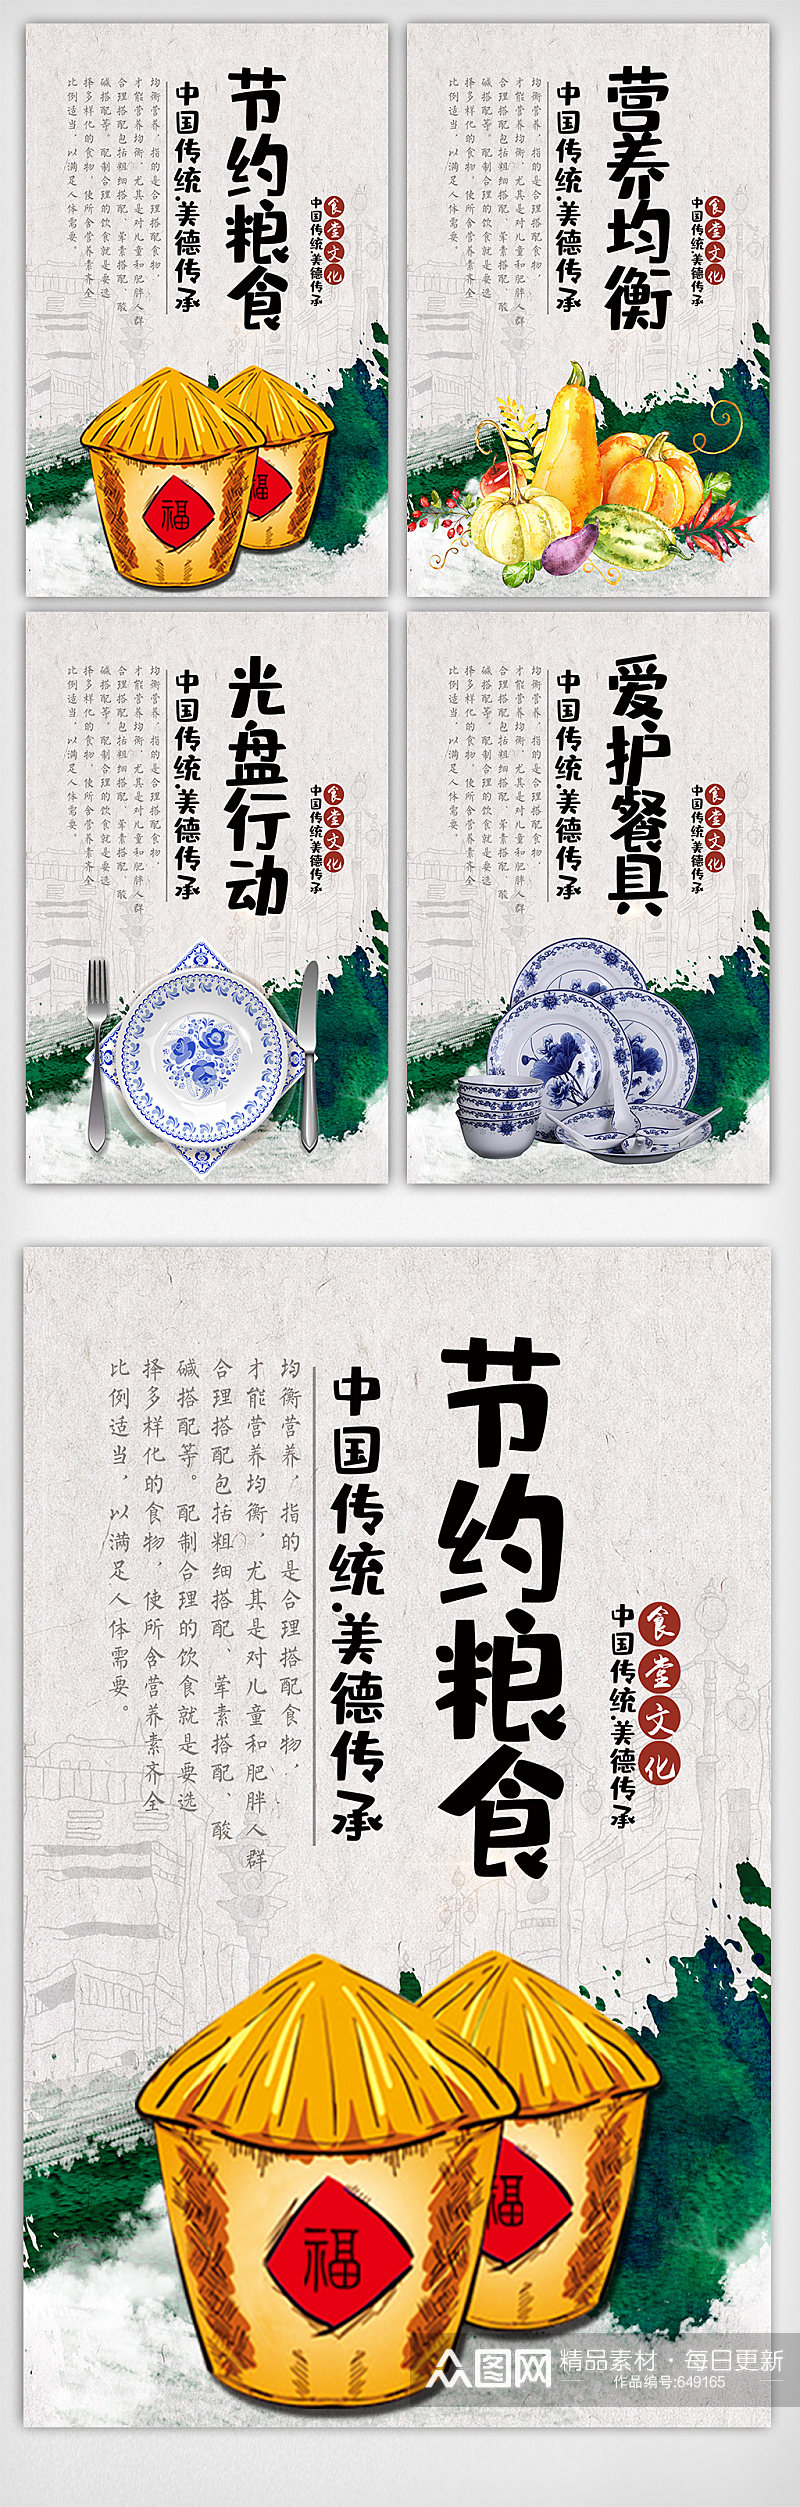 中国风水墨食堂文化挂画展板素材